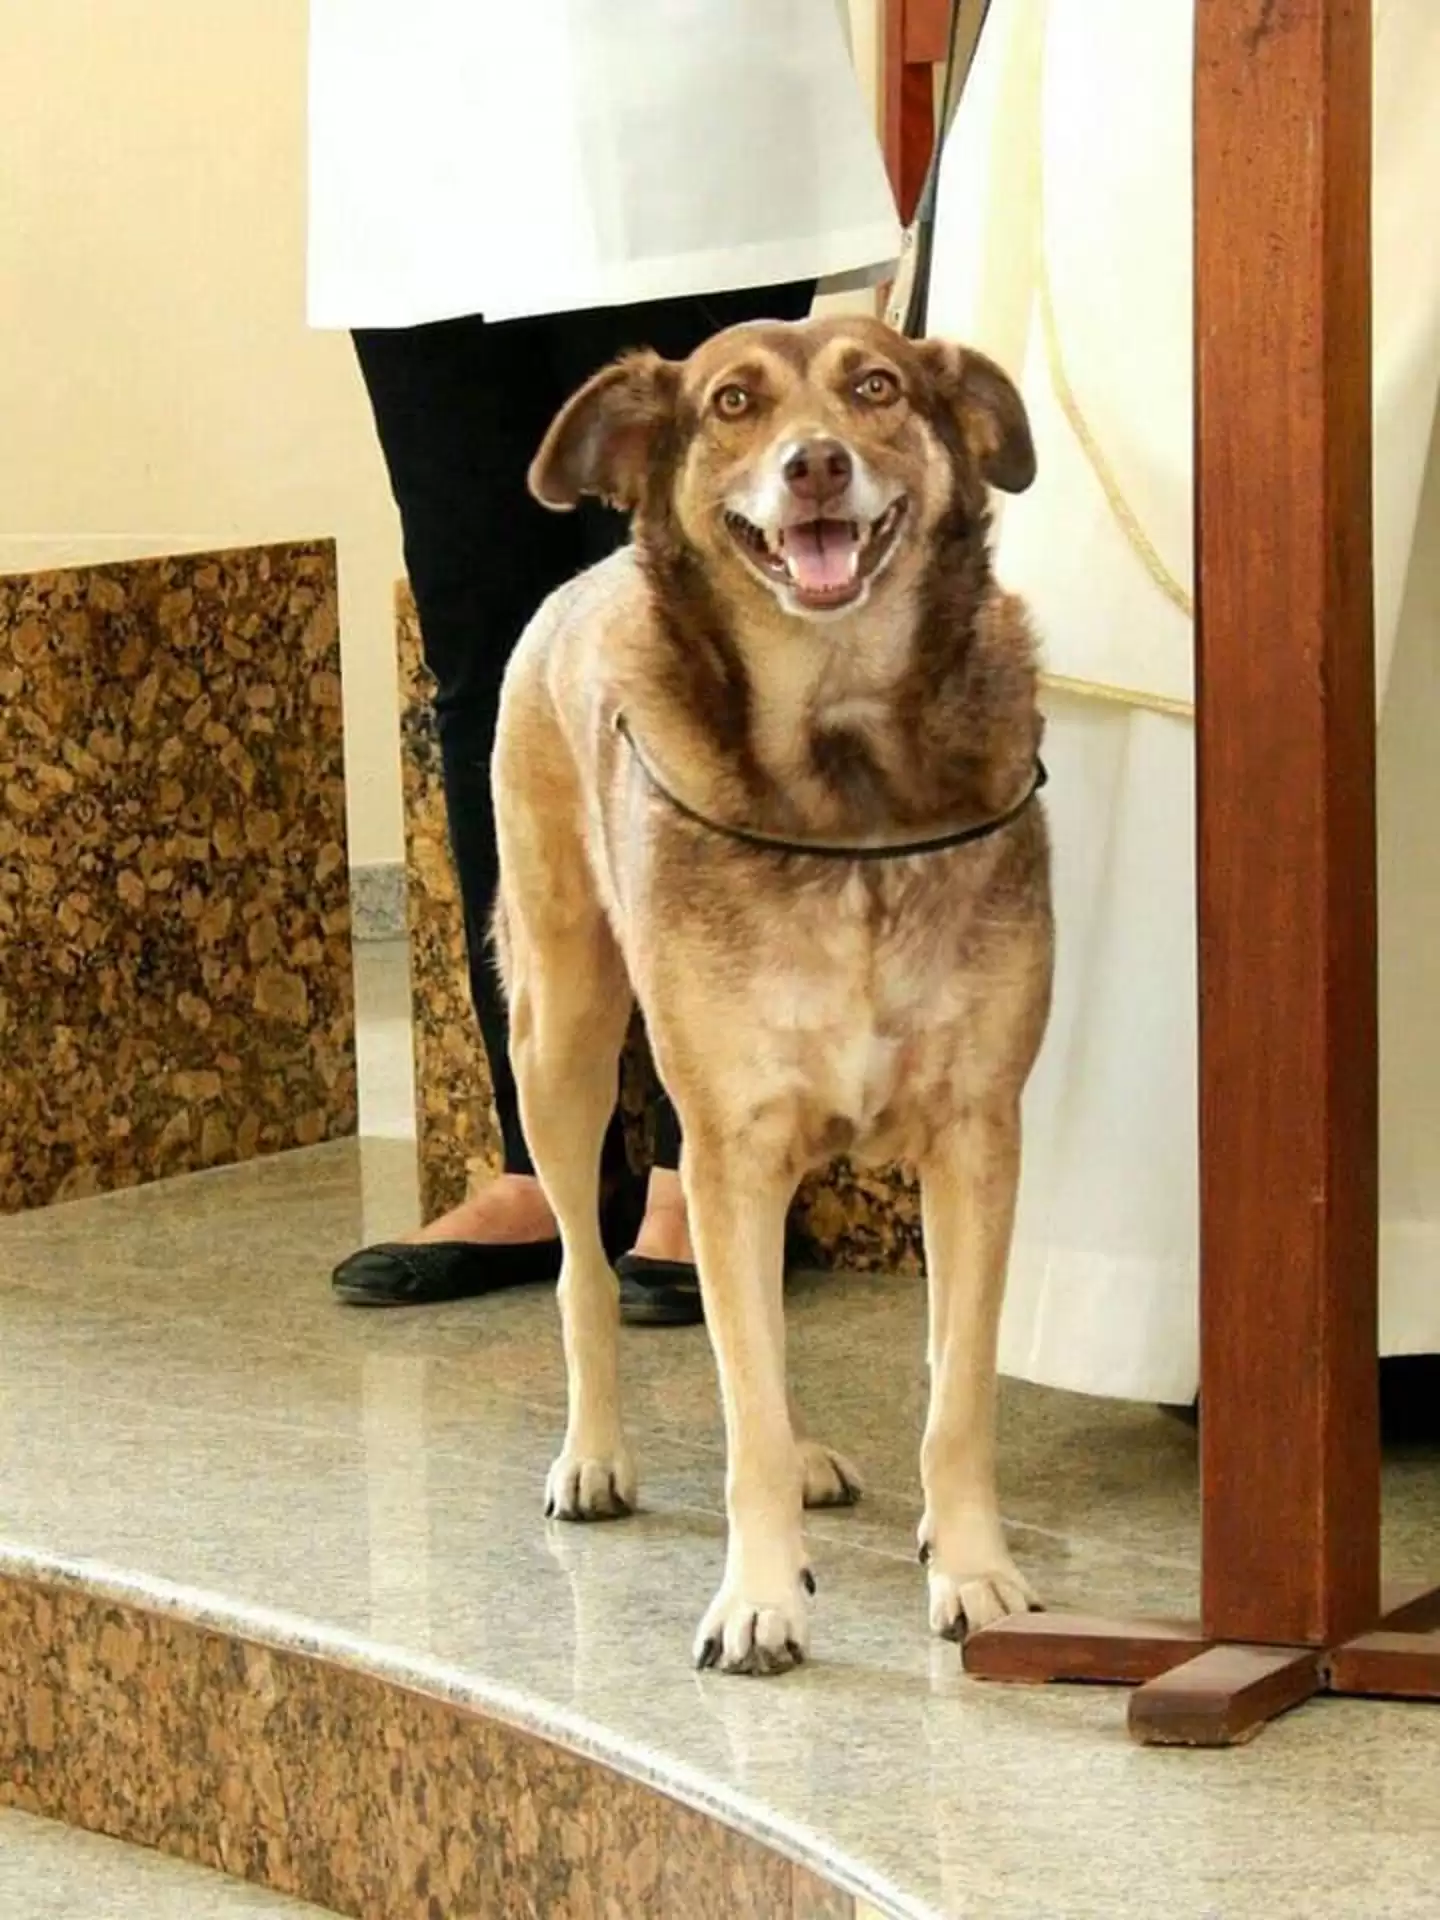 นักบวชชาวบราซิลพาสุนัขจรจัดมาร่วมพิธีมิสซาทุกครั้ง เพื่อหาบ้านที่อบอุ่นให้กับน้อง